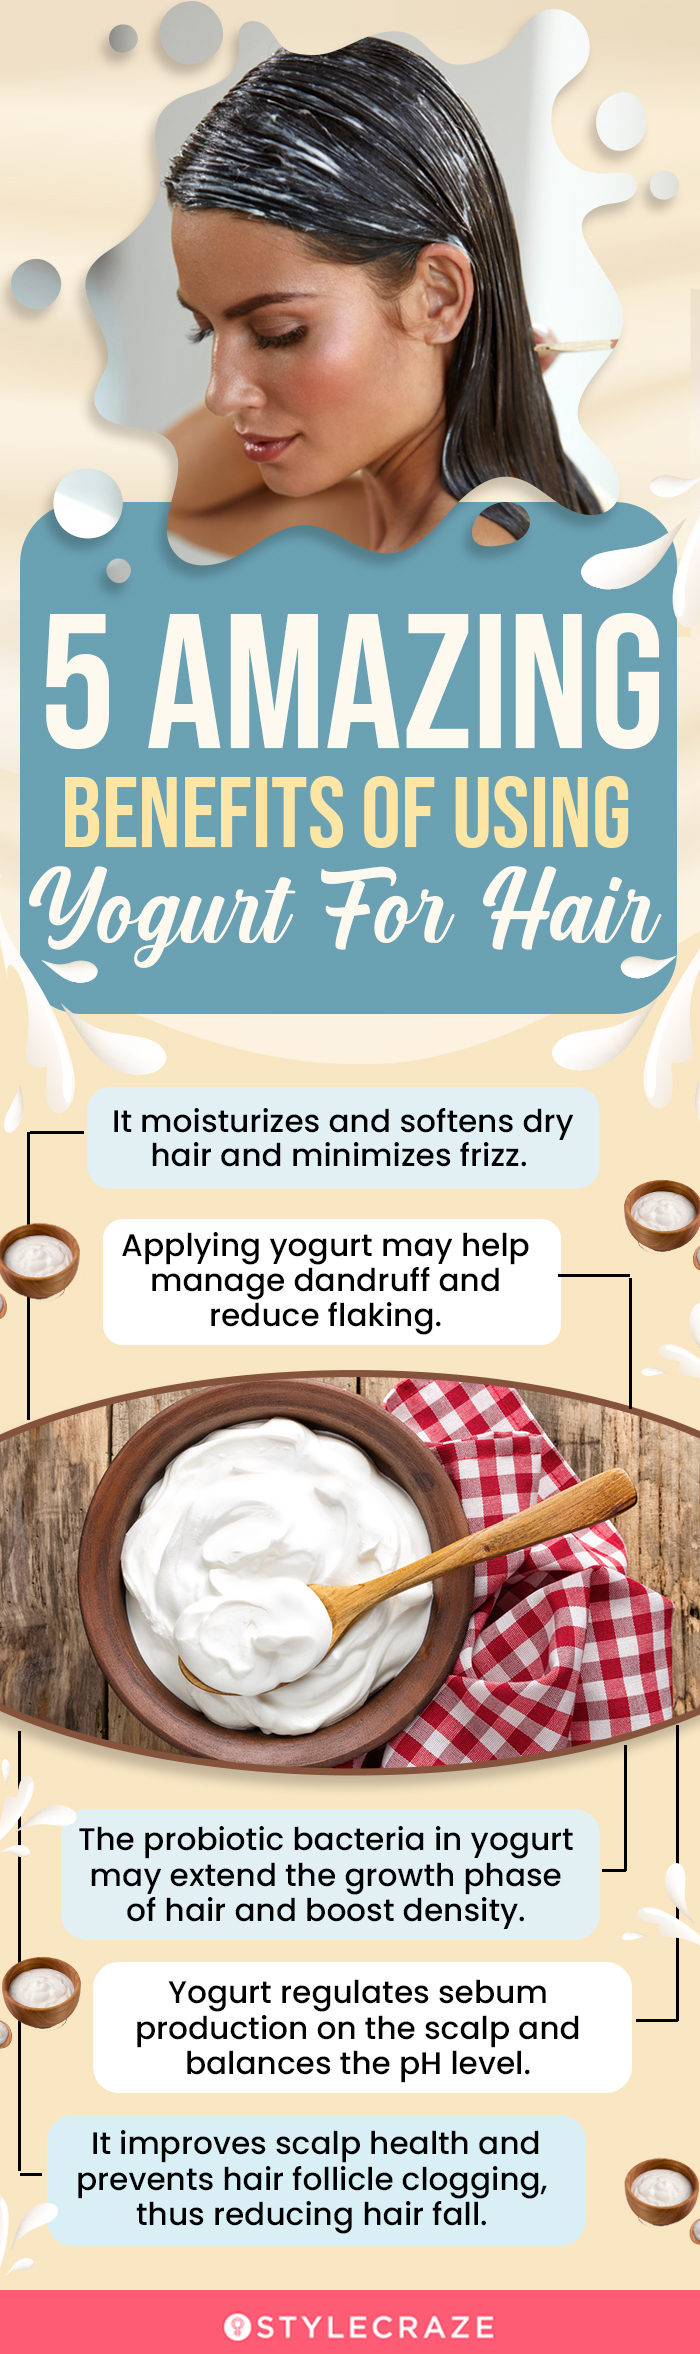 5 amazing benefits of using yogurt for hair (infographic)